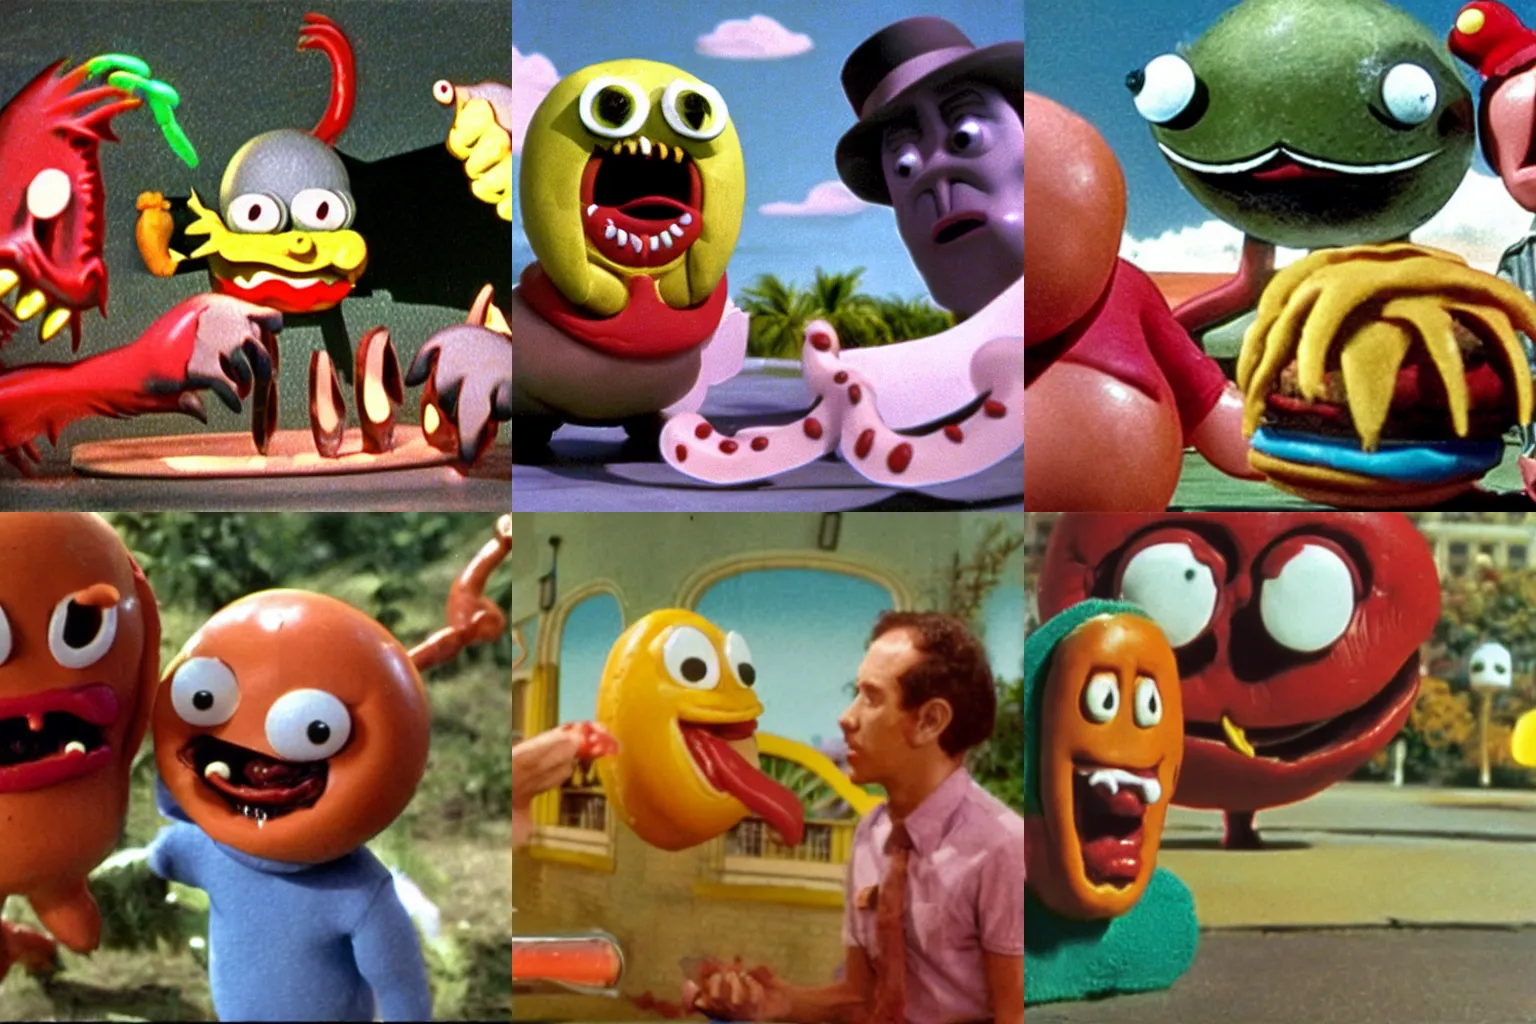 Prompt: Color movie still from Hot Dog monster vs Hamburger monster by Ray Harryhausen